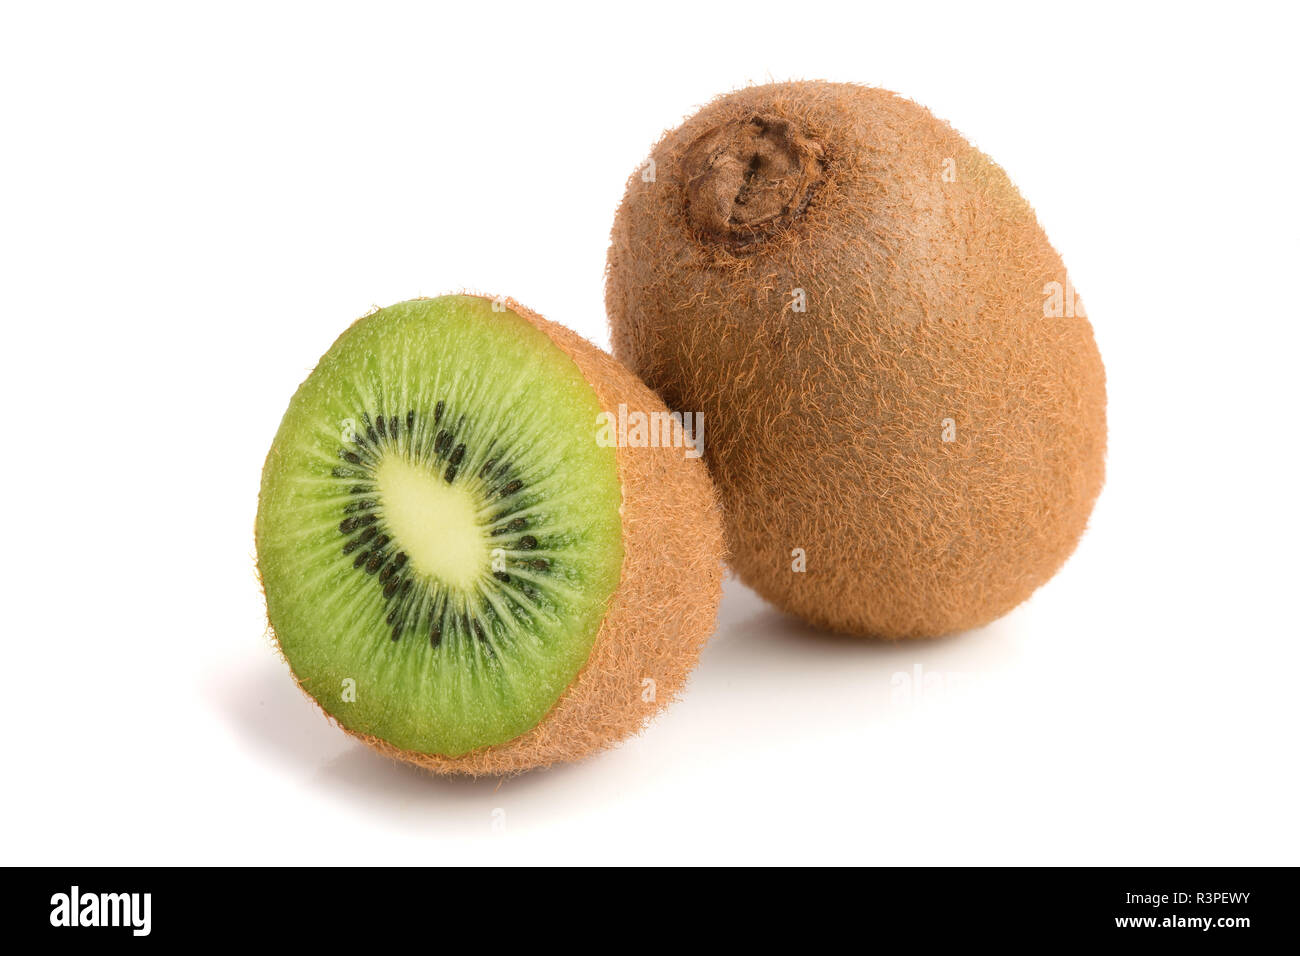 Kiwifruit - Wikipedia